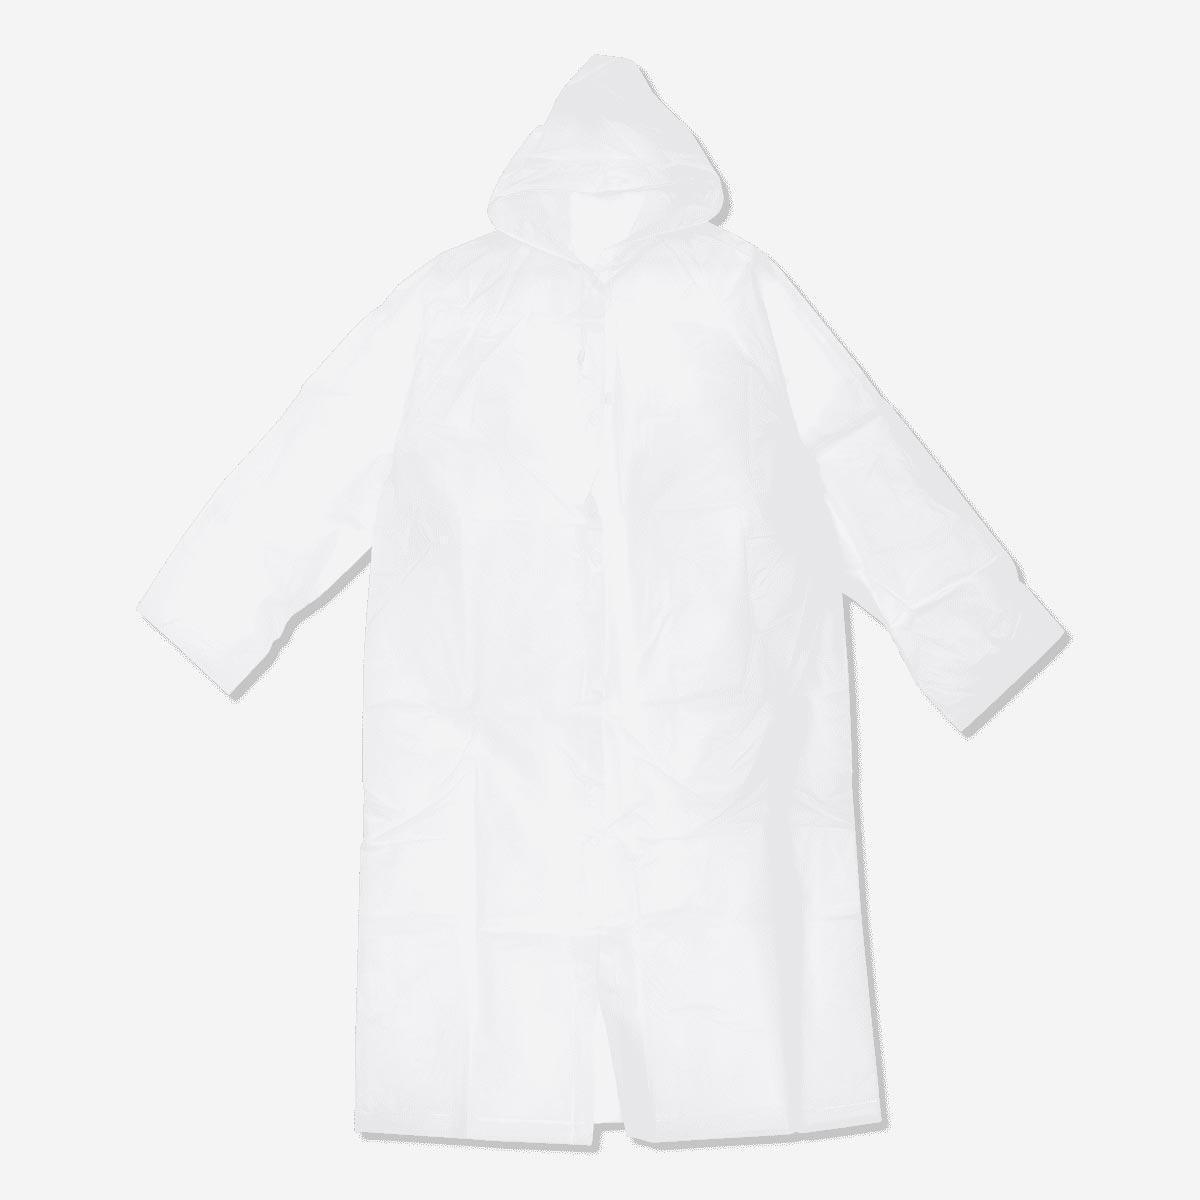 White raincoat. size s/m